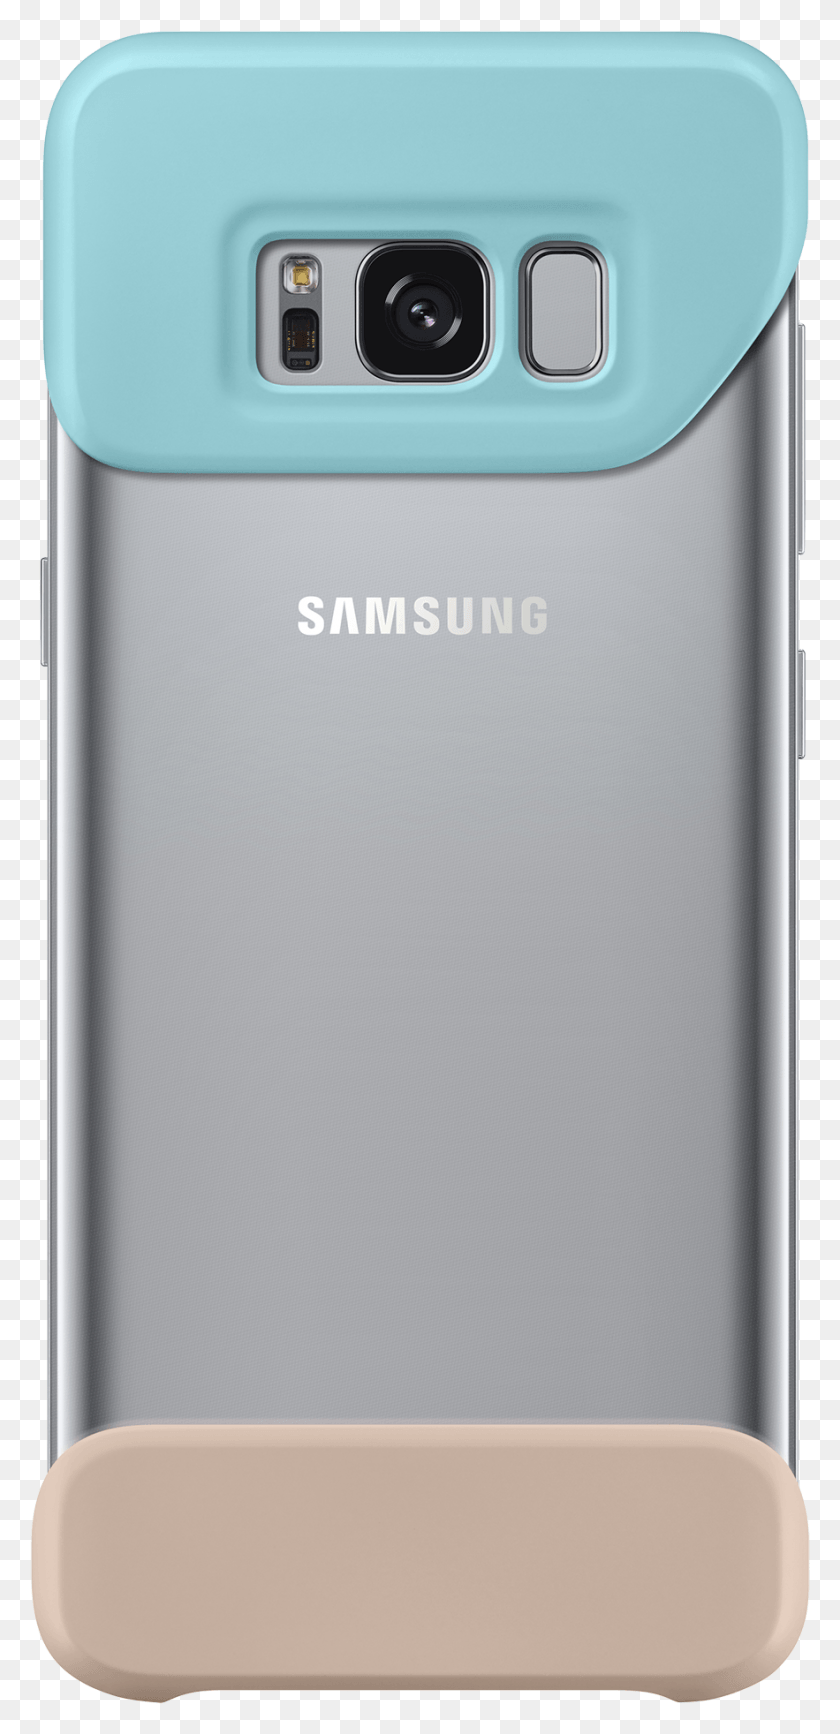 883x1896 Descargar Png Samsung Galaxy S8 Cubierta De Dos Piezas Mint Amp Marrón Samsung Galaxy S8 Cubierta De Dos Piezas, Teléfono Móvil, Electrónica Hd Png